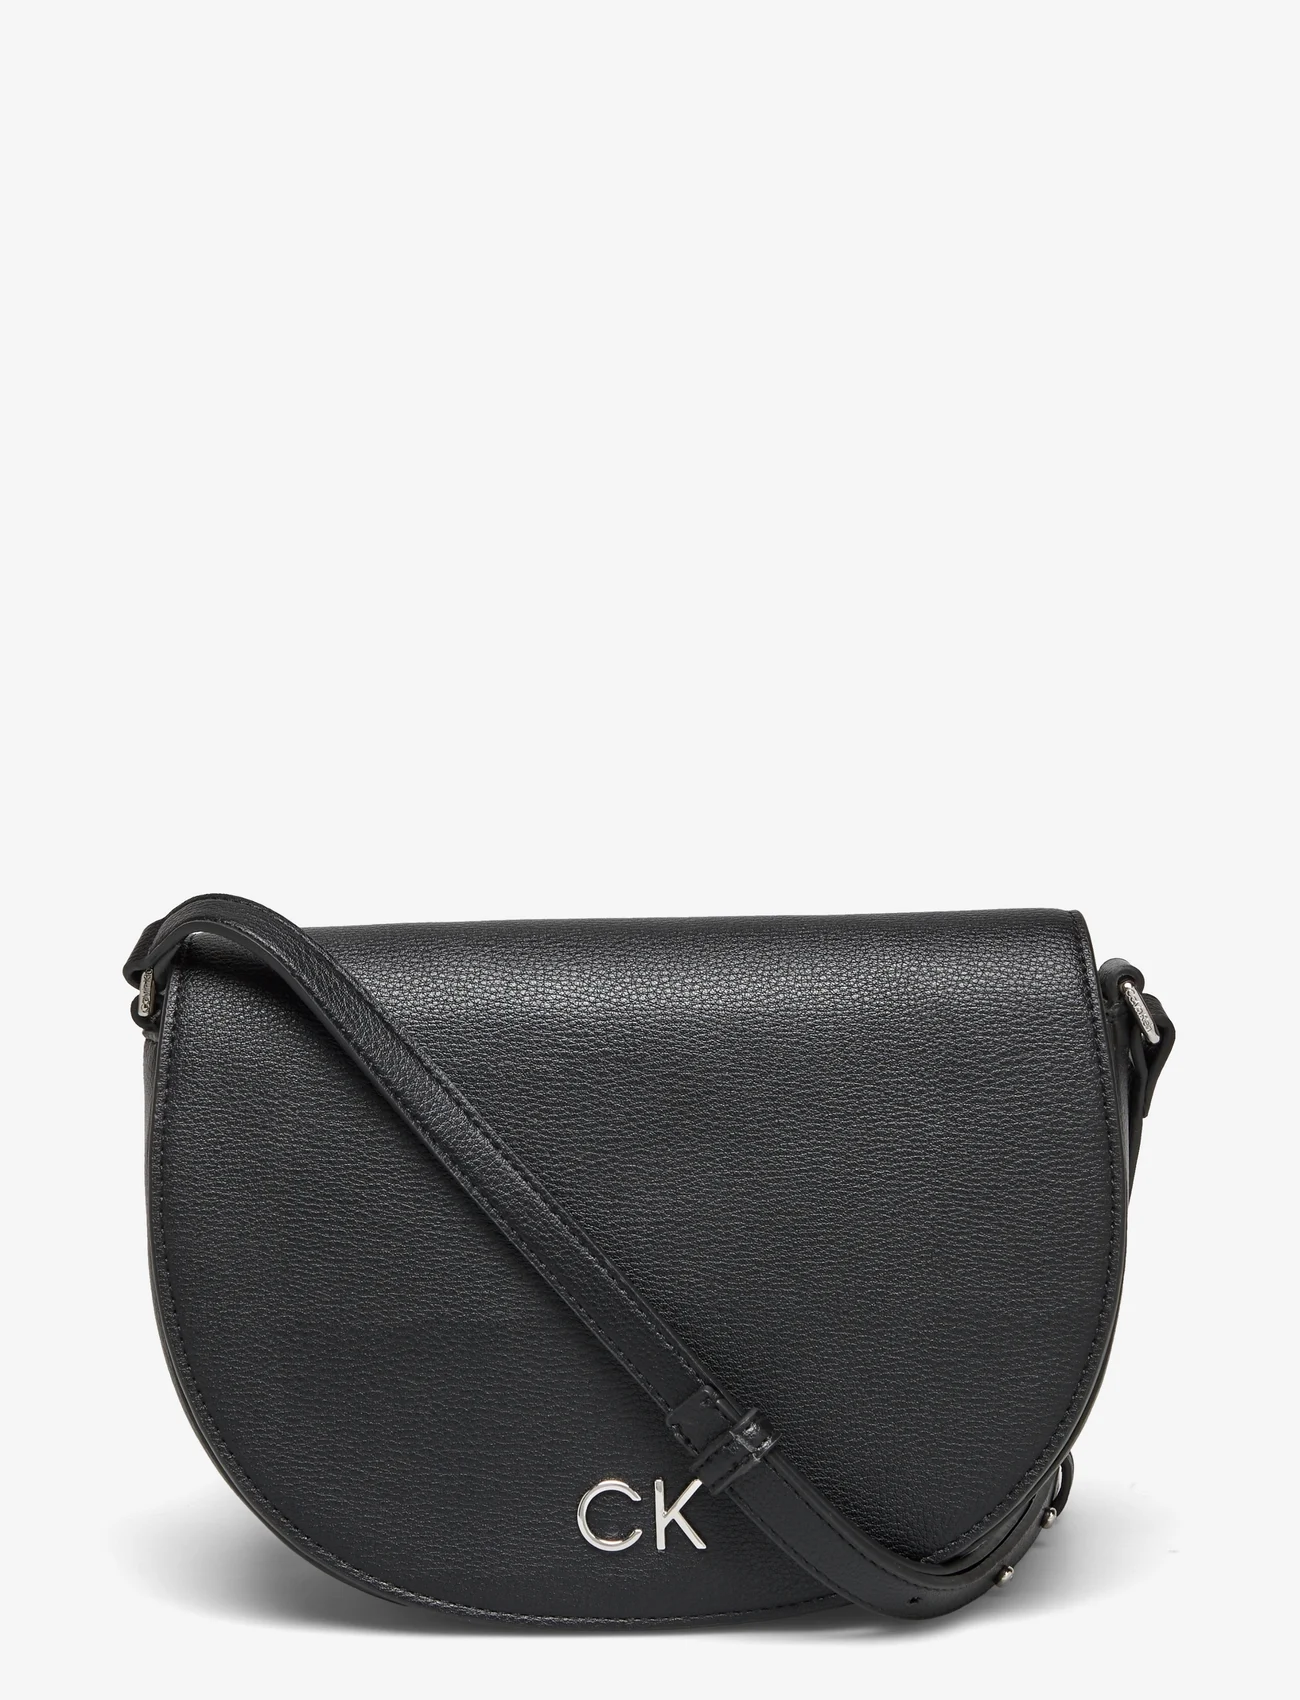 Calvin Klein - CK DAILY SADDLE BAG PEBBLE - festtøj til outletpriser - ck black - 0